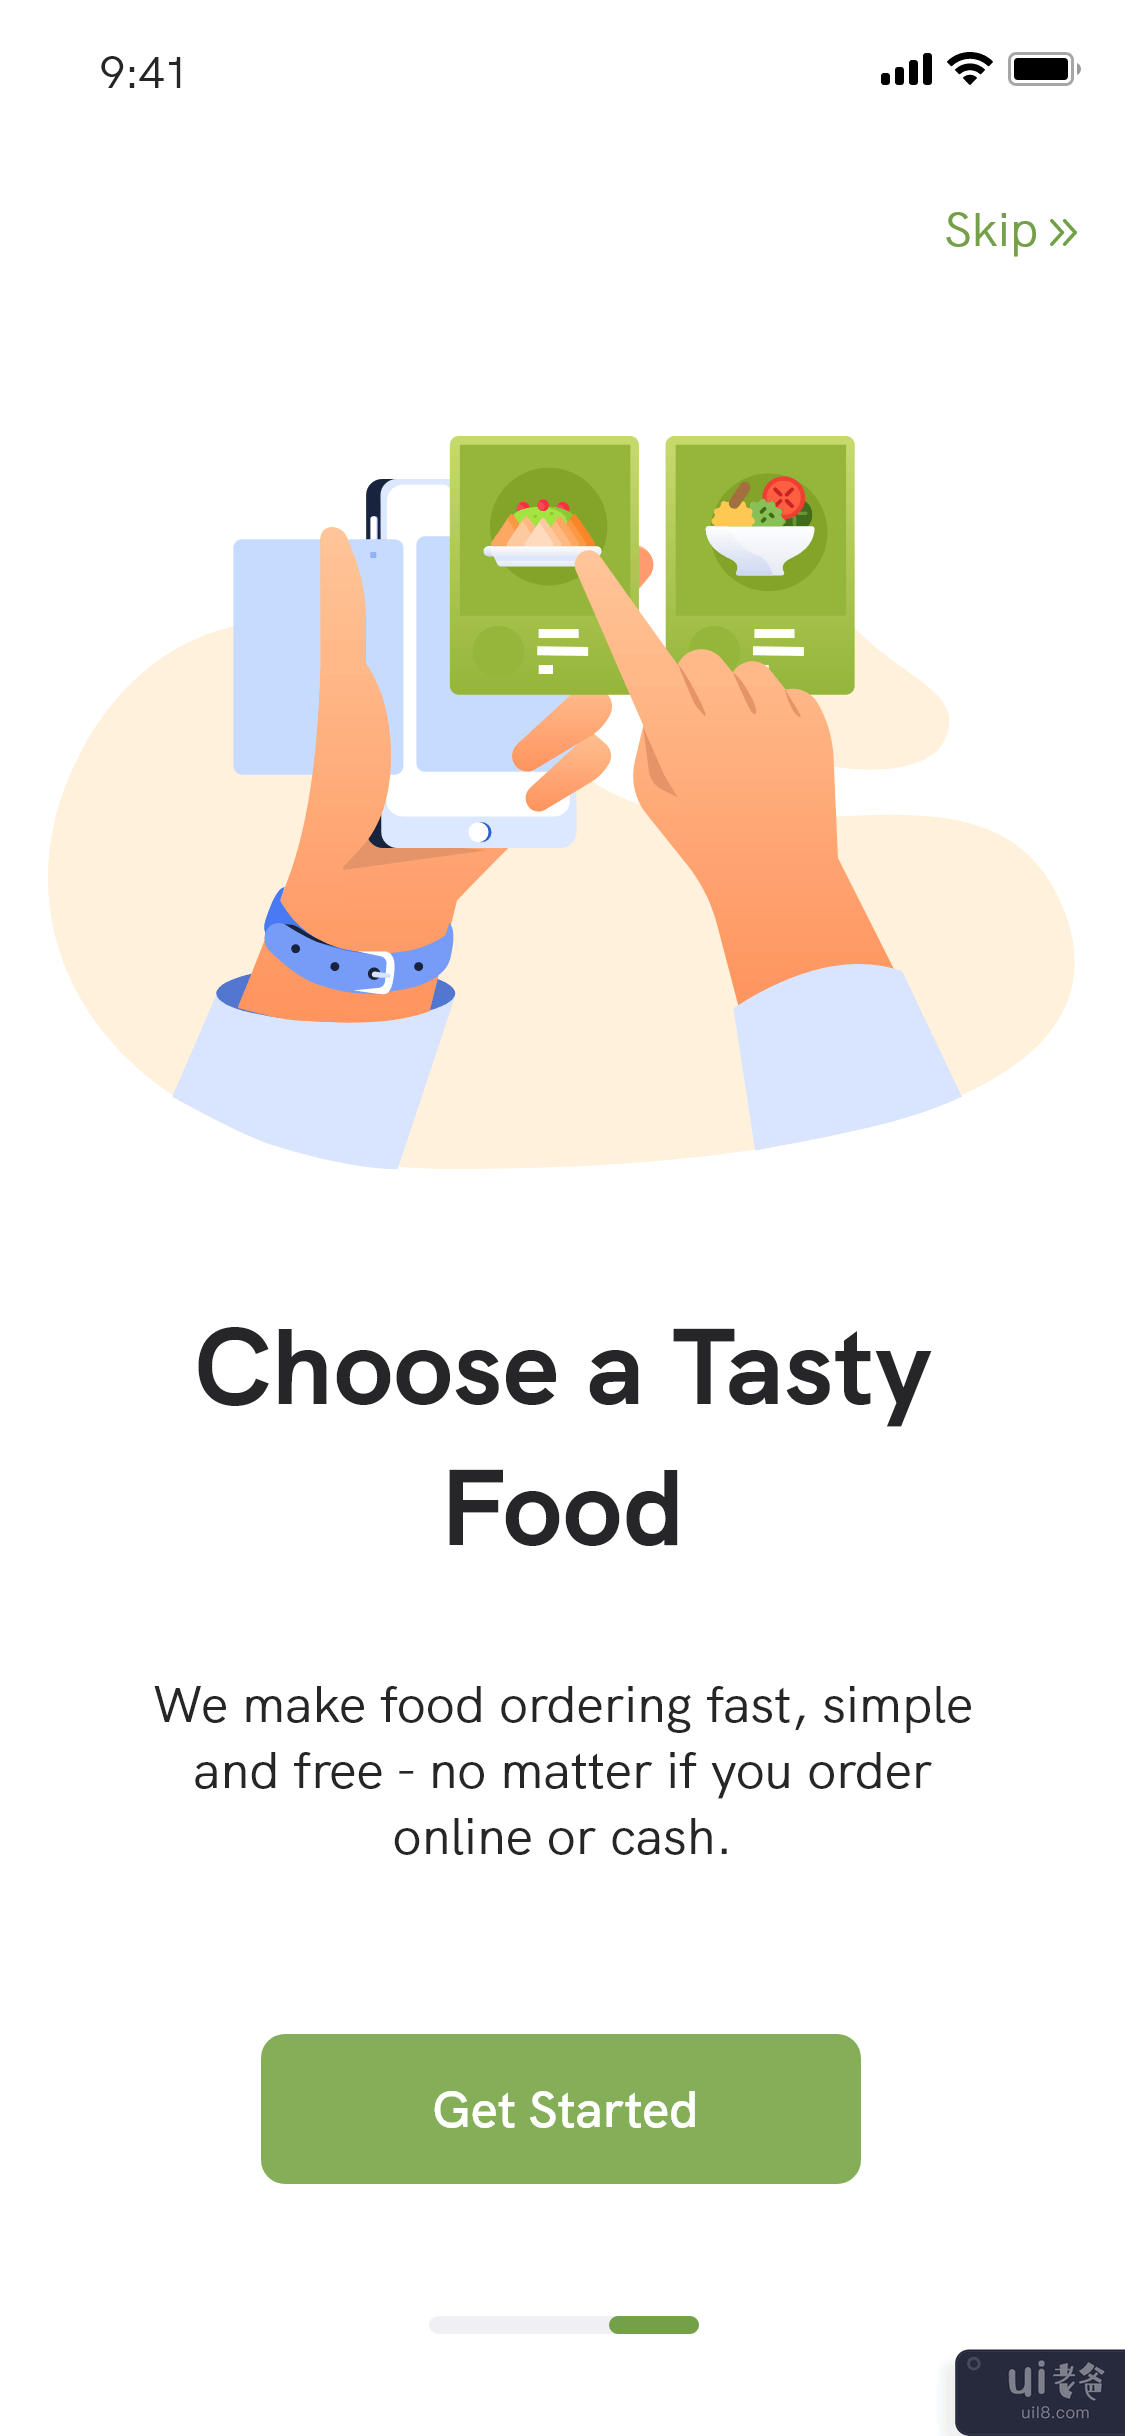 送餐应用程序 - 餐厅查找器应用程序(Food Delivery app - Restaurant Finder App)插图3